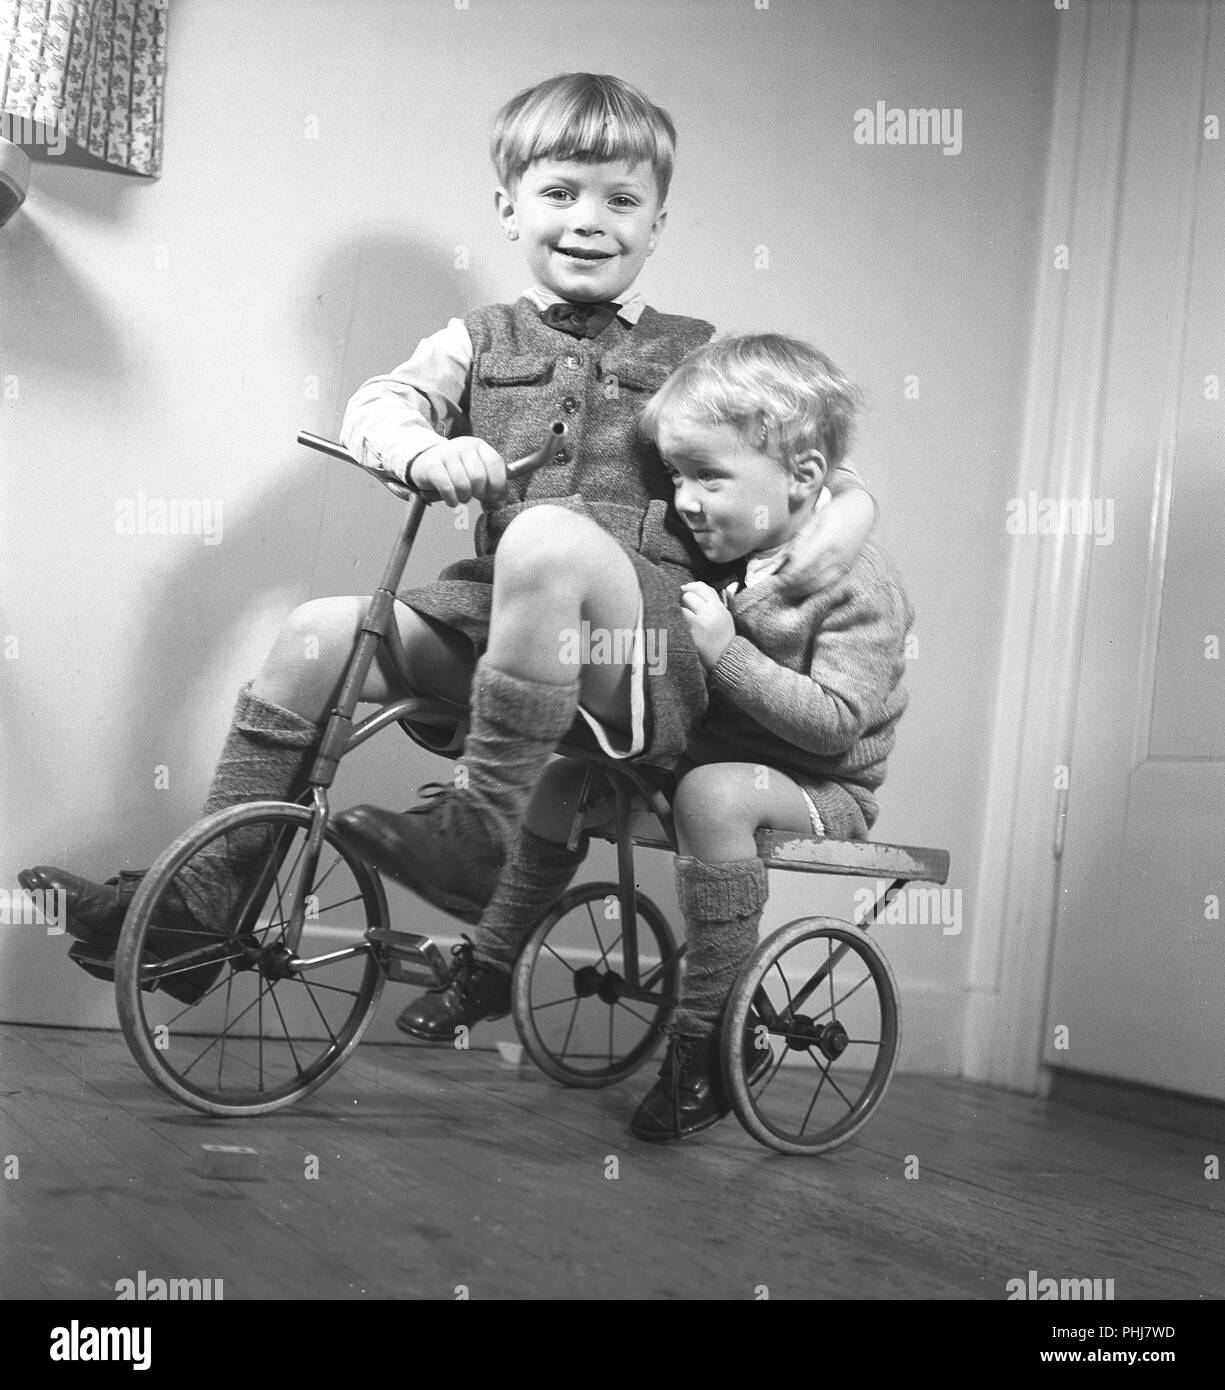 1940 enfants. Deux garçons jouent sur un tricycle. Le frère aîné, il pédale et le jeune frère est assis à l'arrière. Suède 1944. Kristoffersson Photo ref M122-6 Banque D'Images